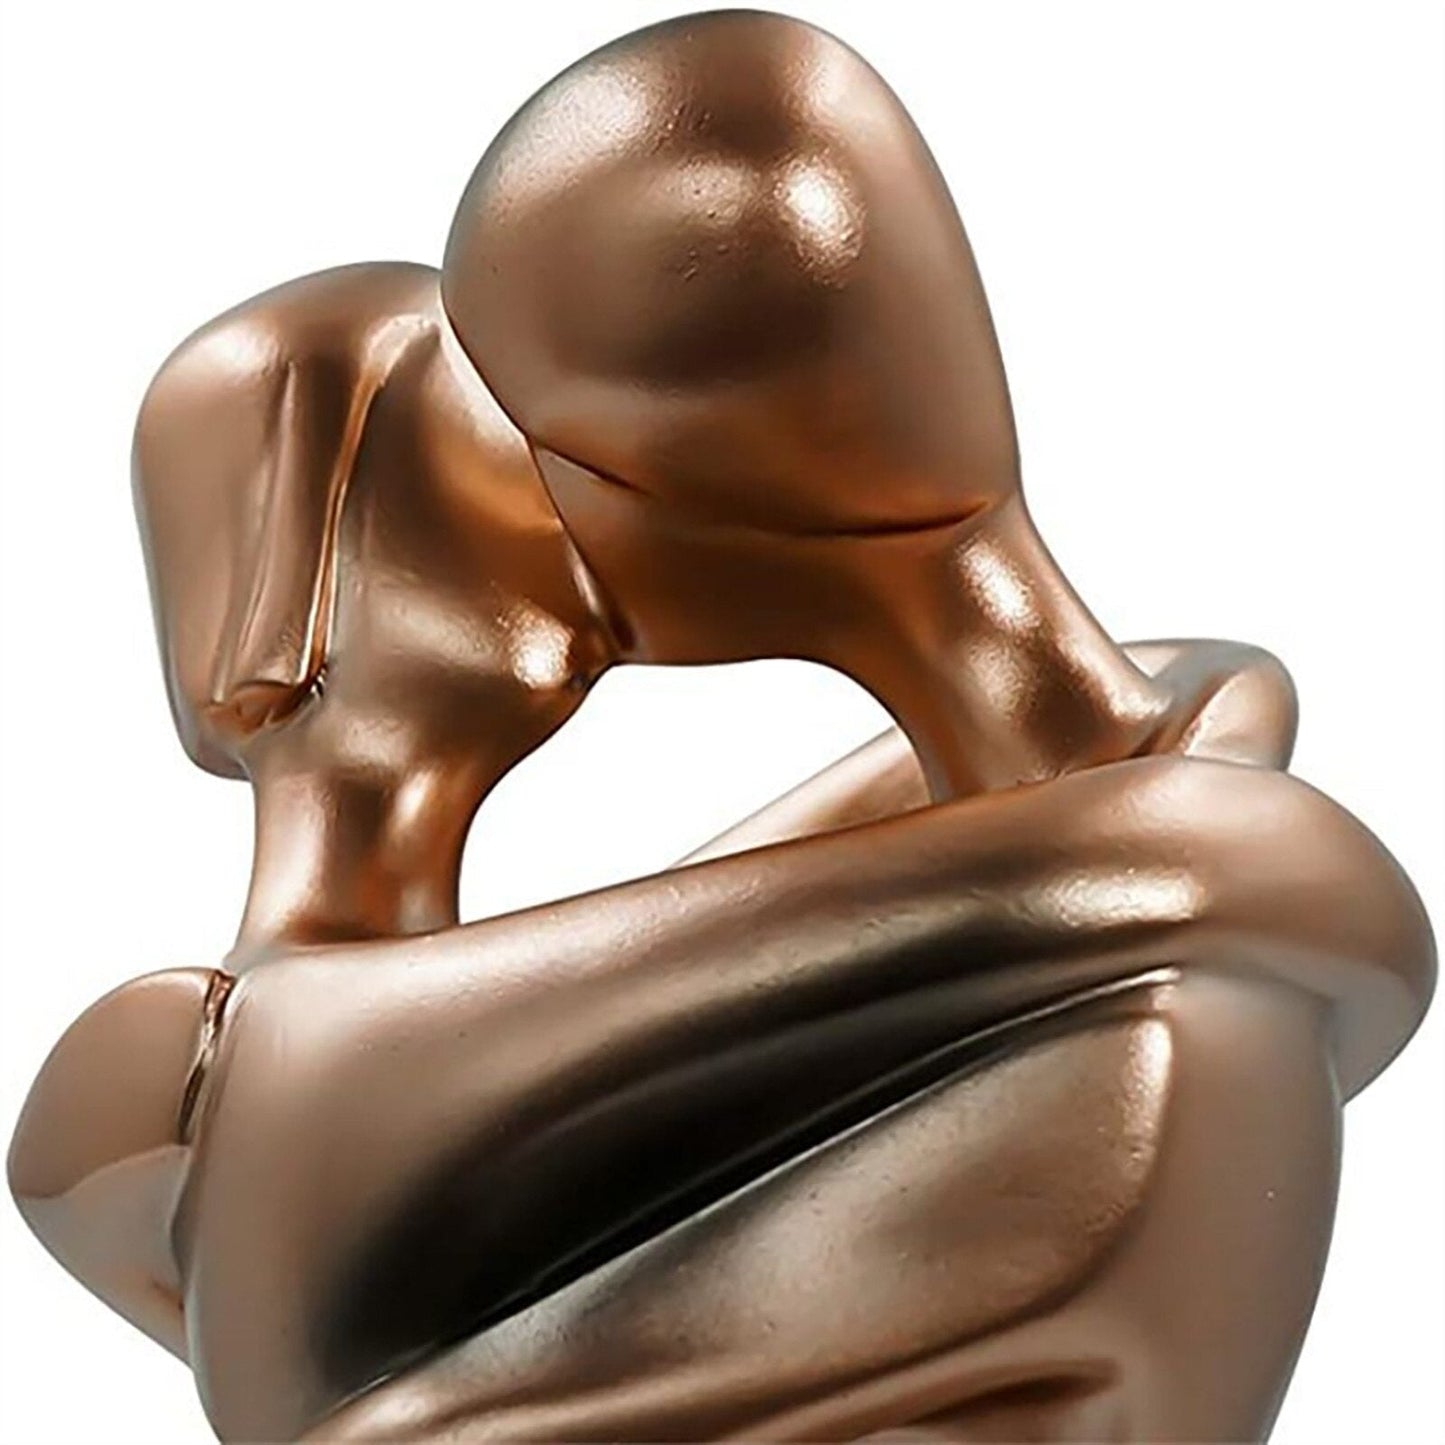 الحرف اليدوية الحديثة براون عناق قبلة زوجين تمثال الديكور الإبداعية تمثال راتنج غرفة الديكور تمثال ديكور المنزل